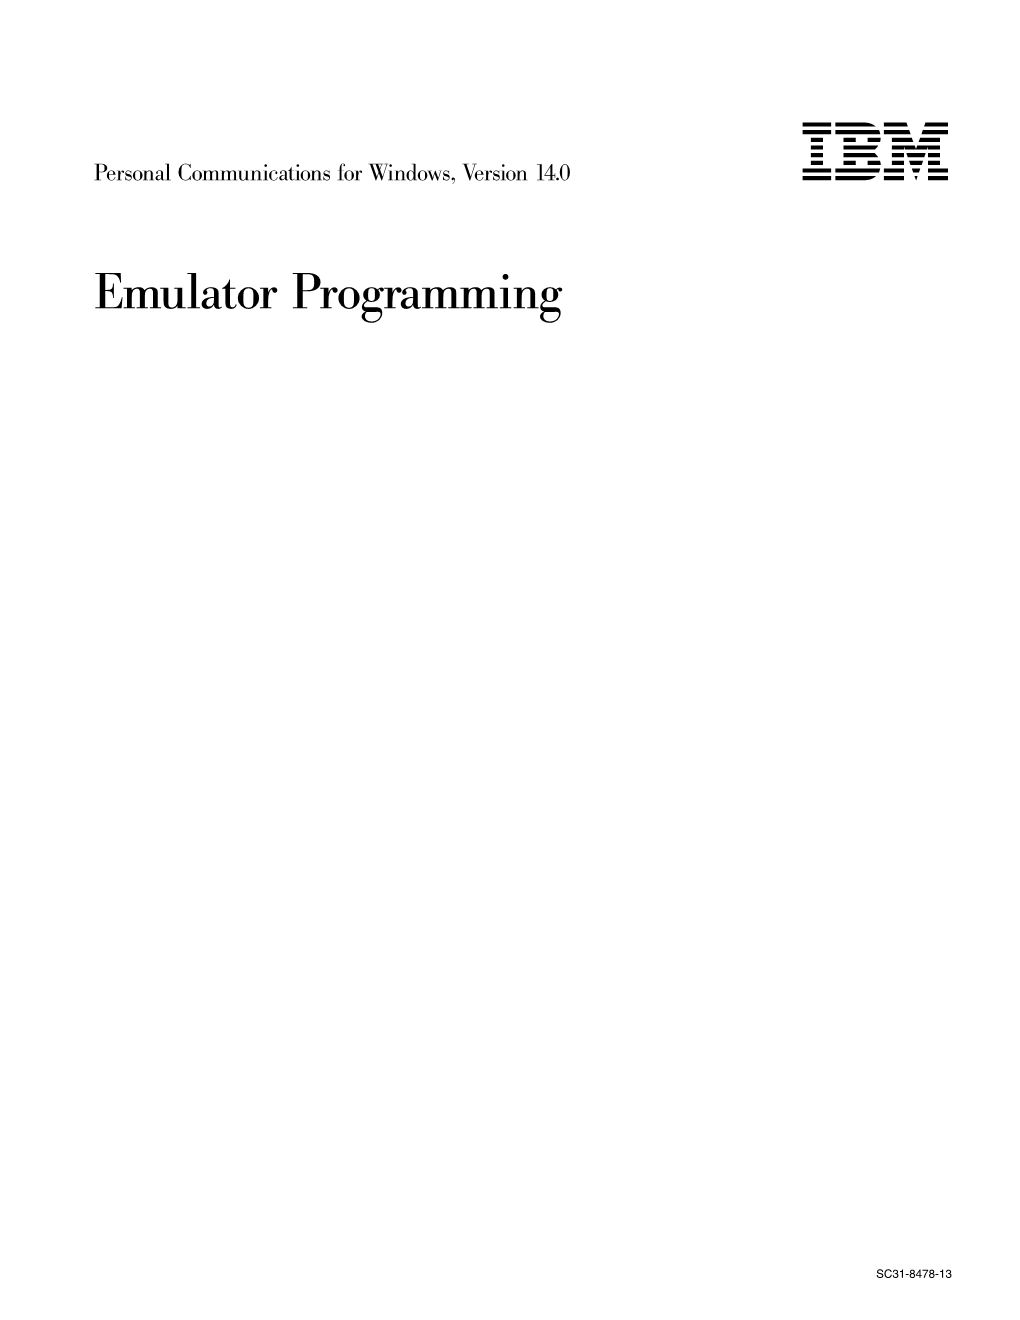 Emulator Programming